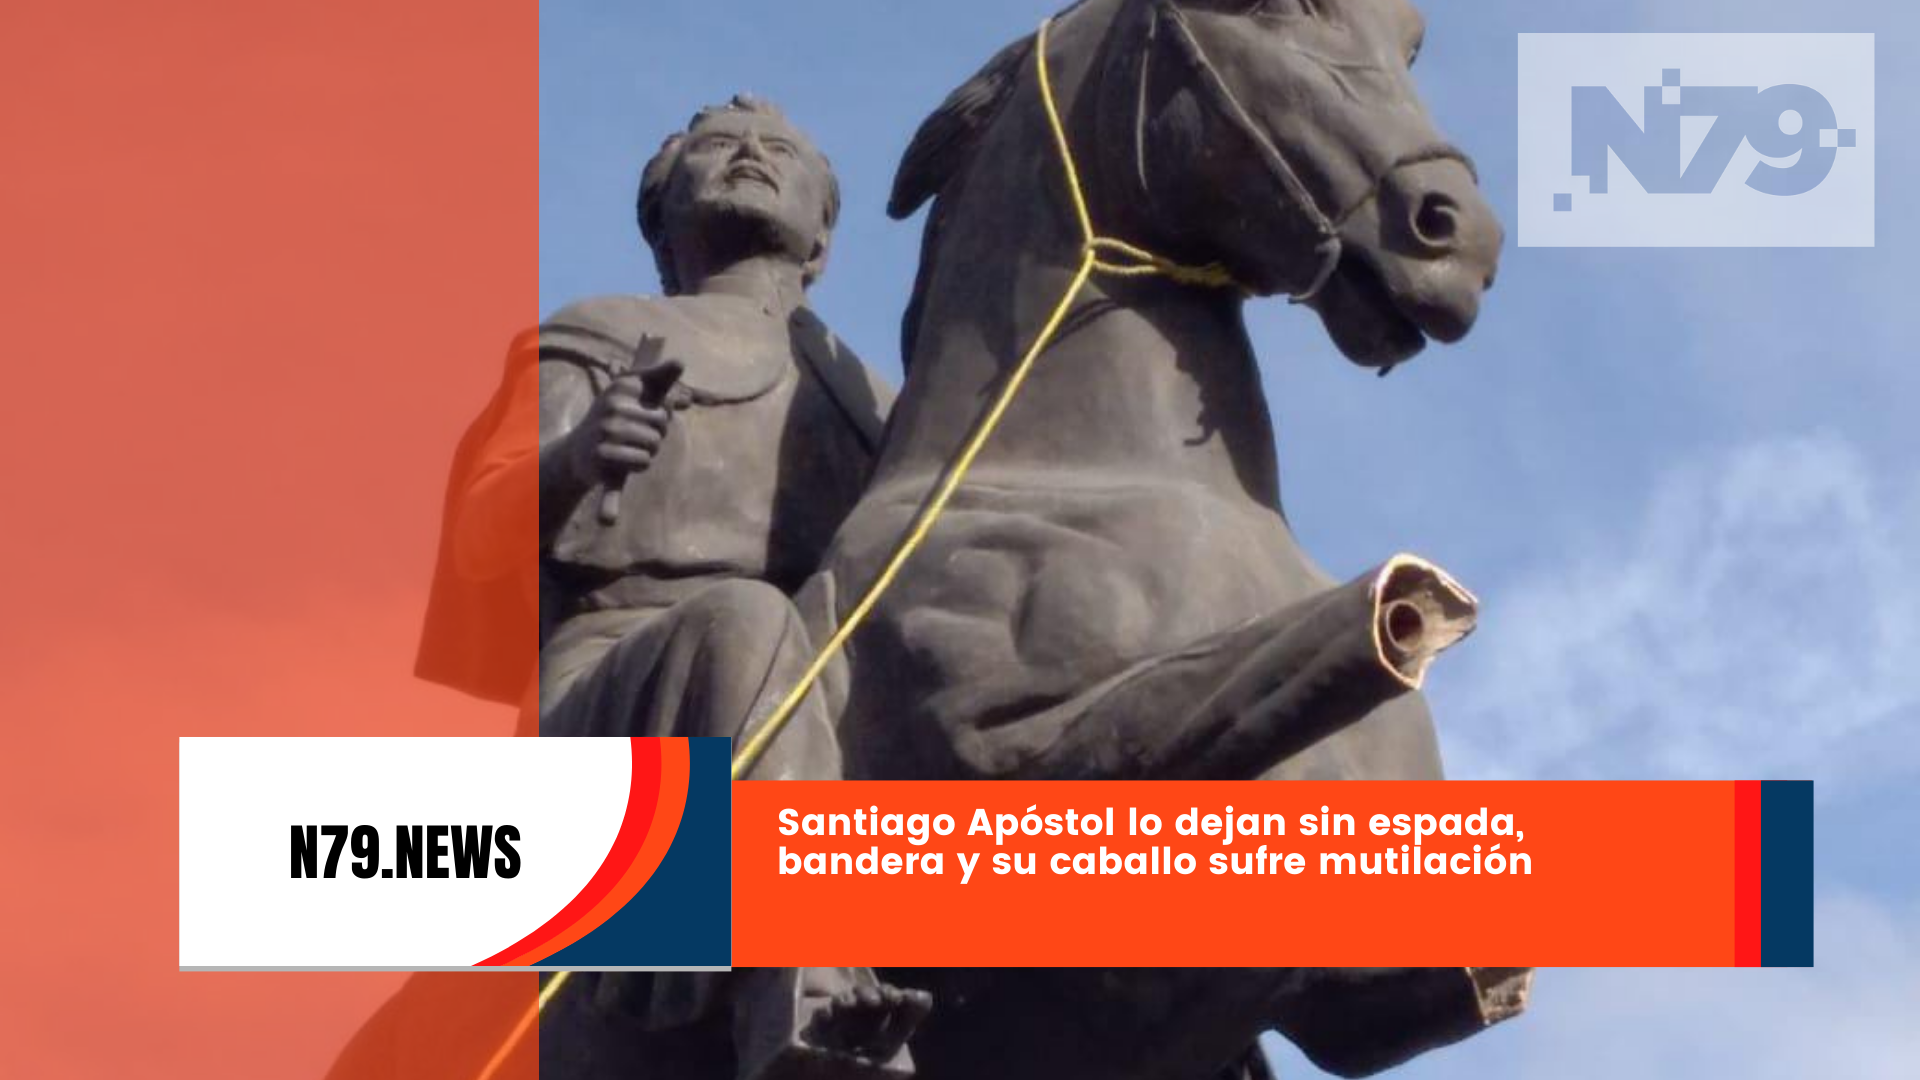 Santiago Apóstol lo dejan sin espada, bandera y su caballo sufre mutilación